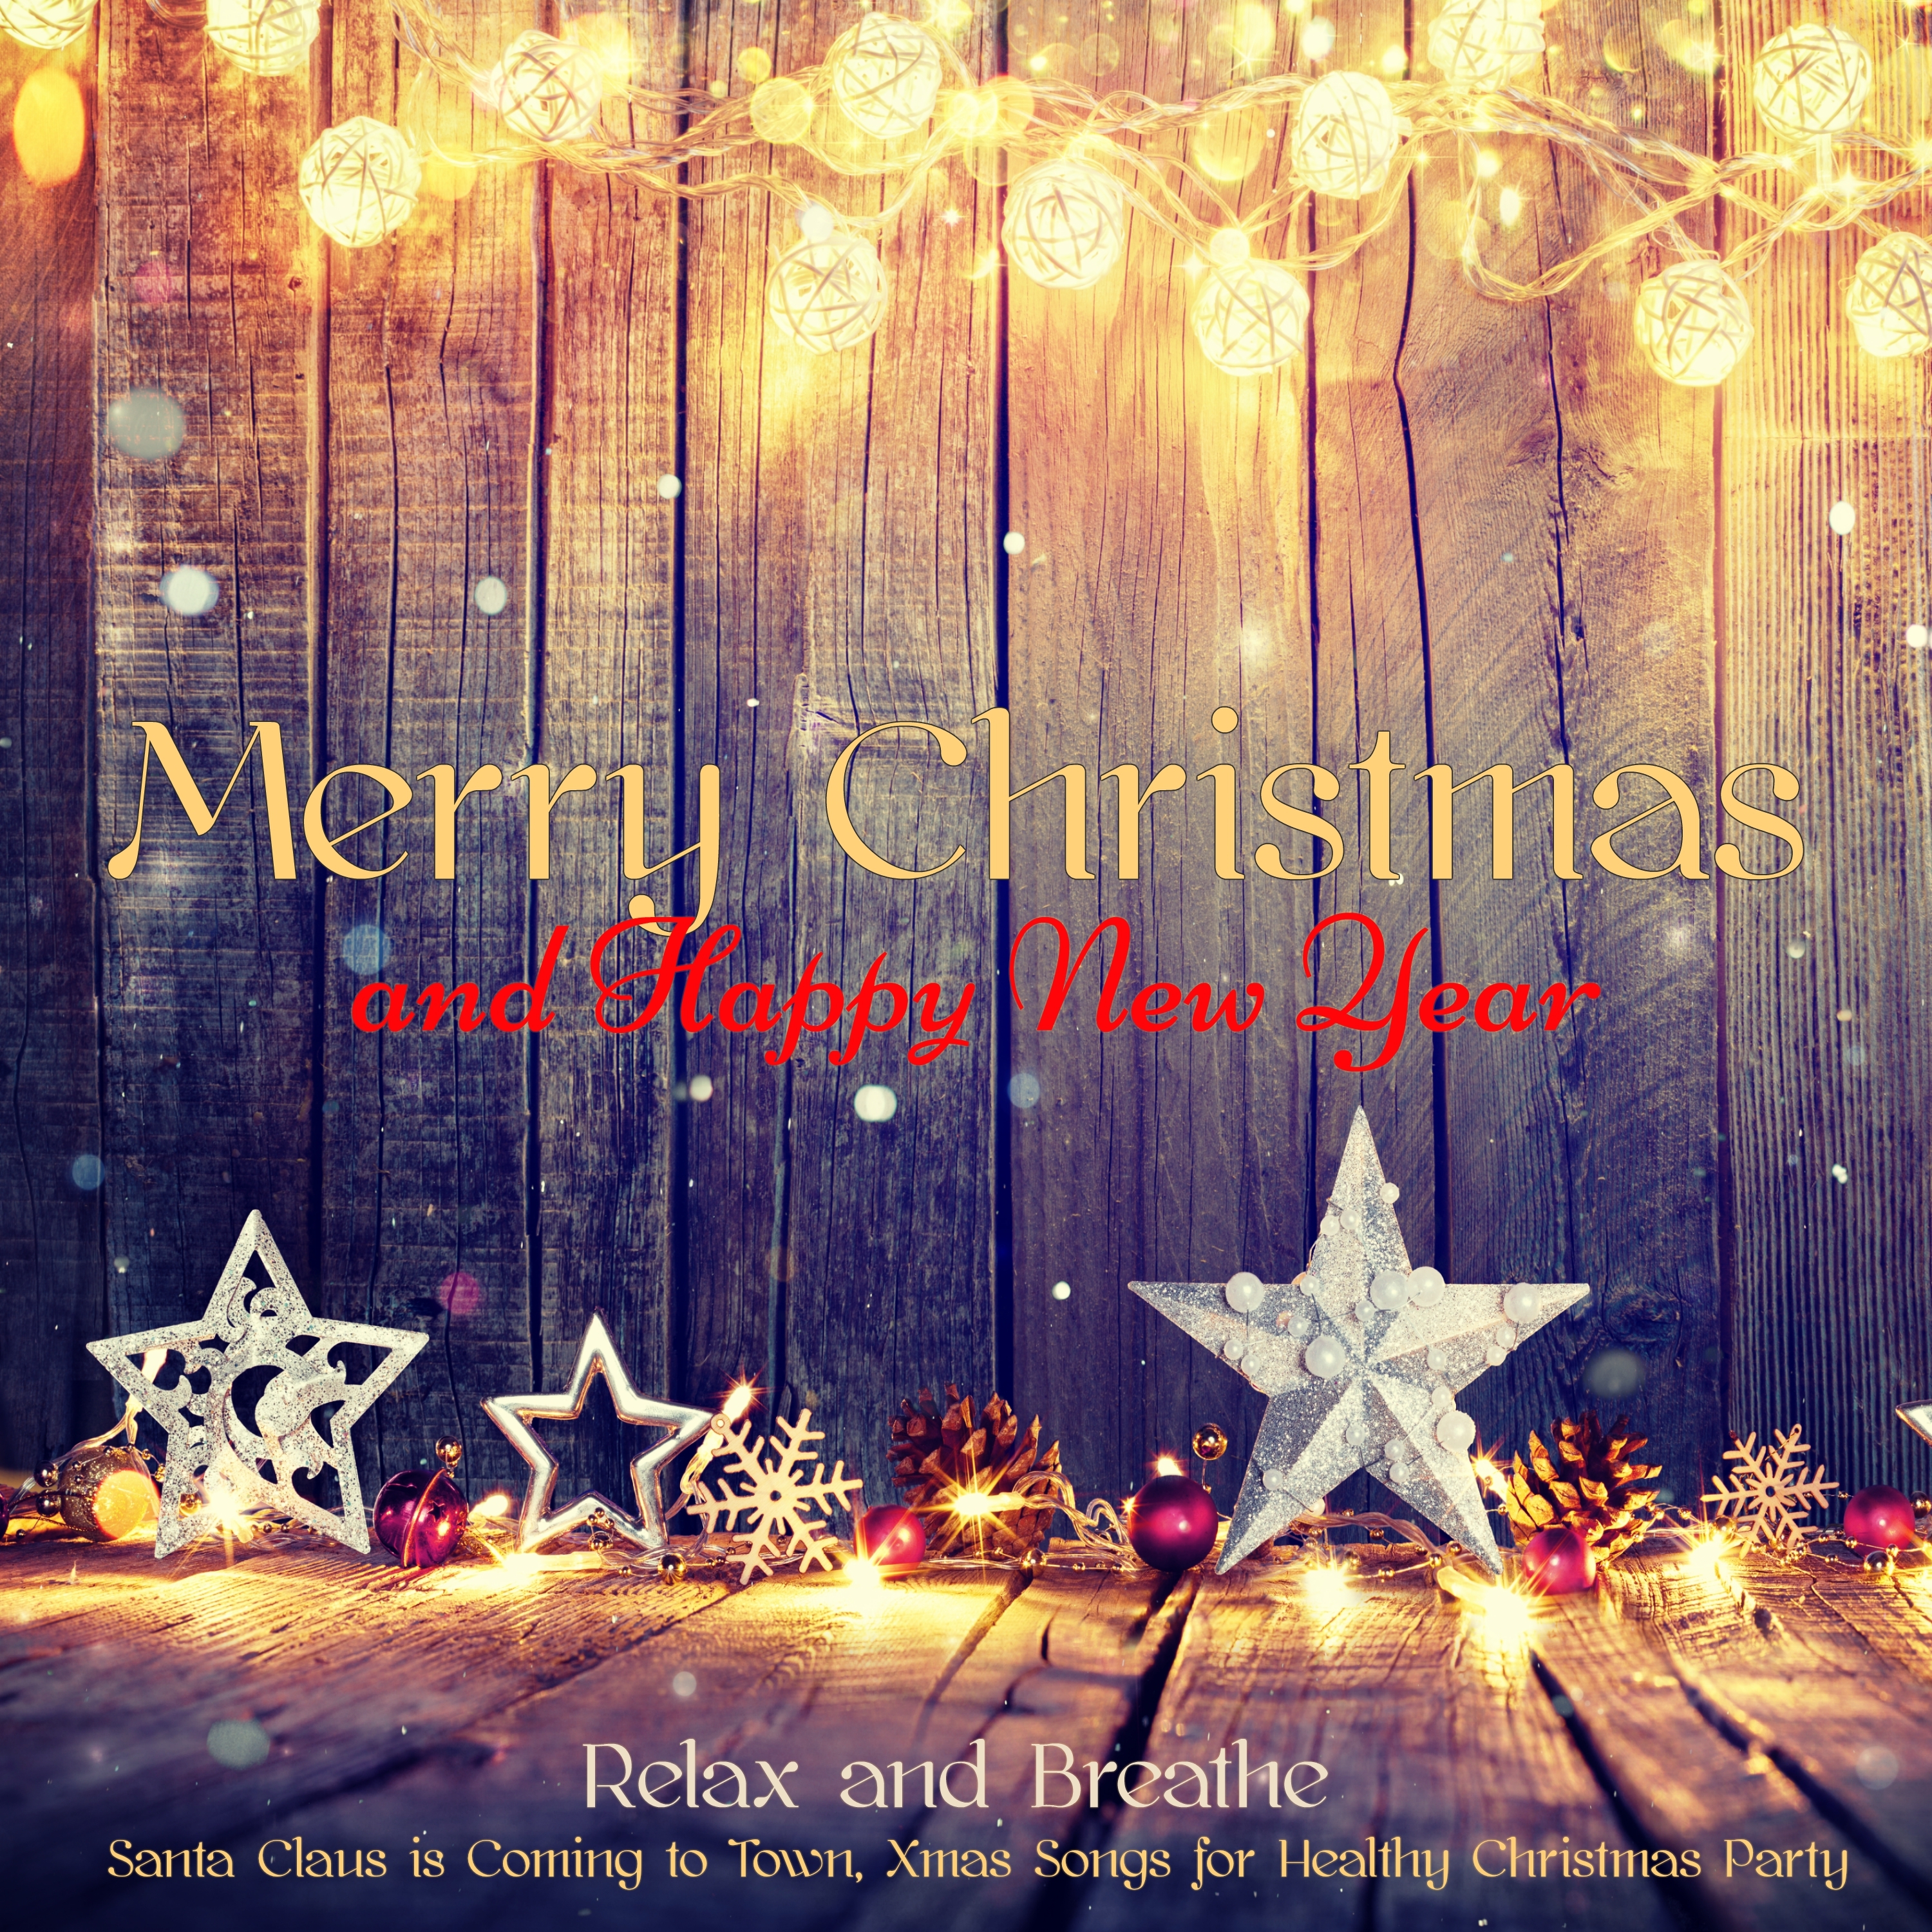 Chimes - Christmas Music